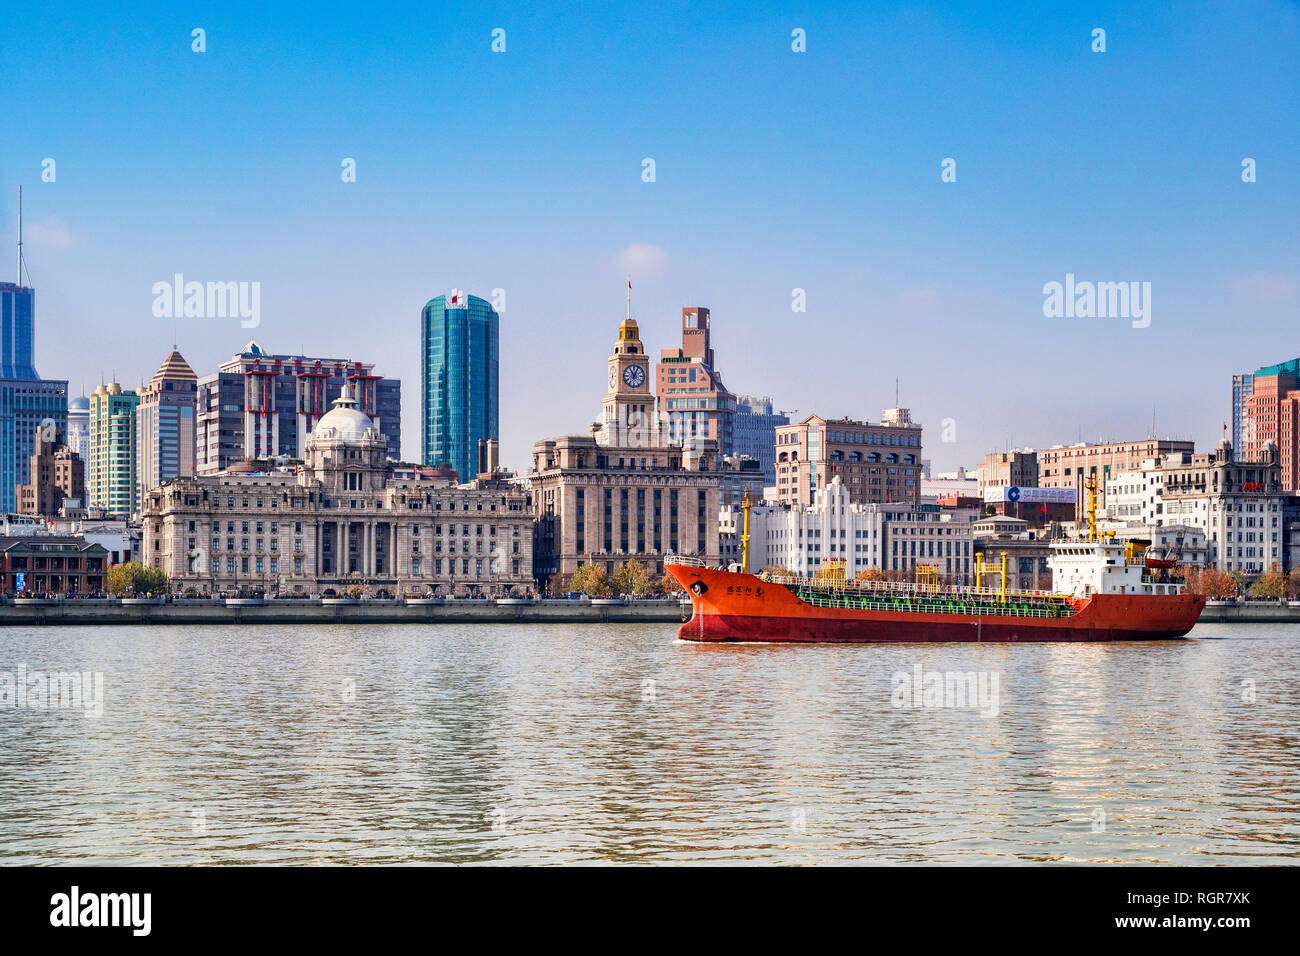 1 Dicembre 2018: Shanghai in Cina - nave da carico sul Fiume Huangpu passando il Bund, la storica zona di business di Shanghai. Foto Stock